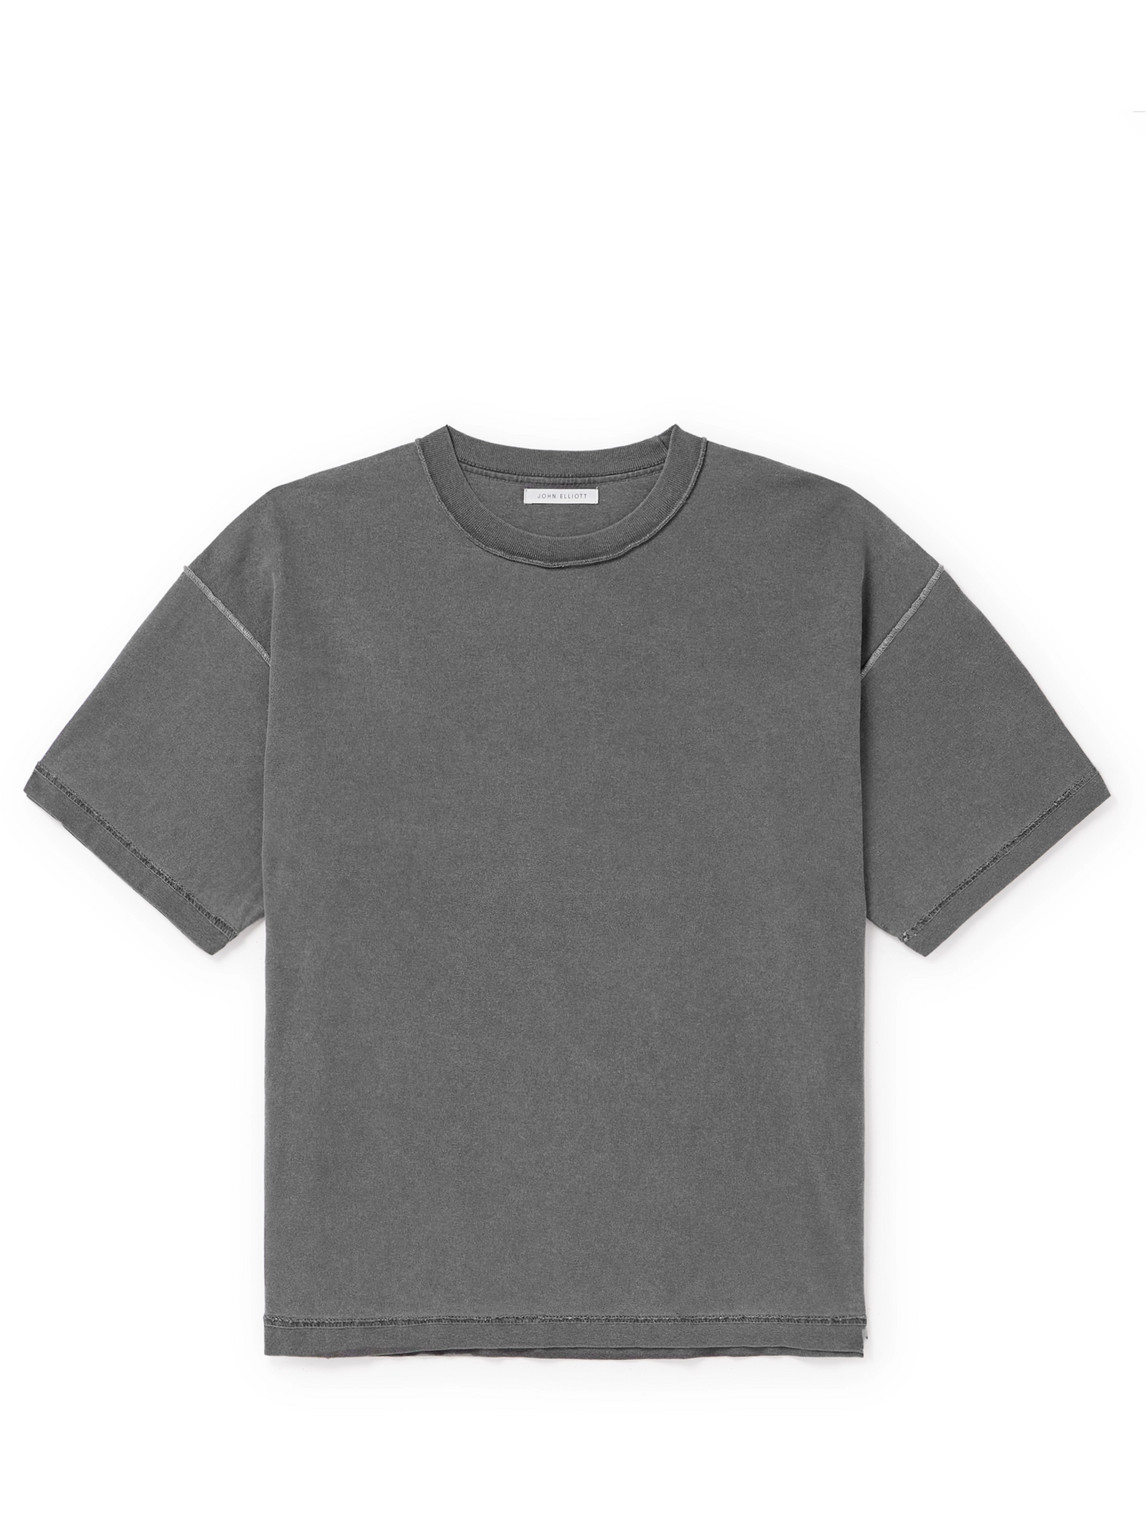 John Elliott Kids' Gray Reversed T-shirt